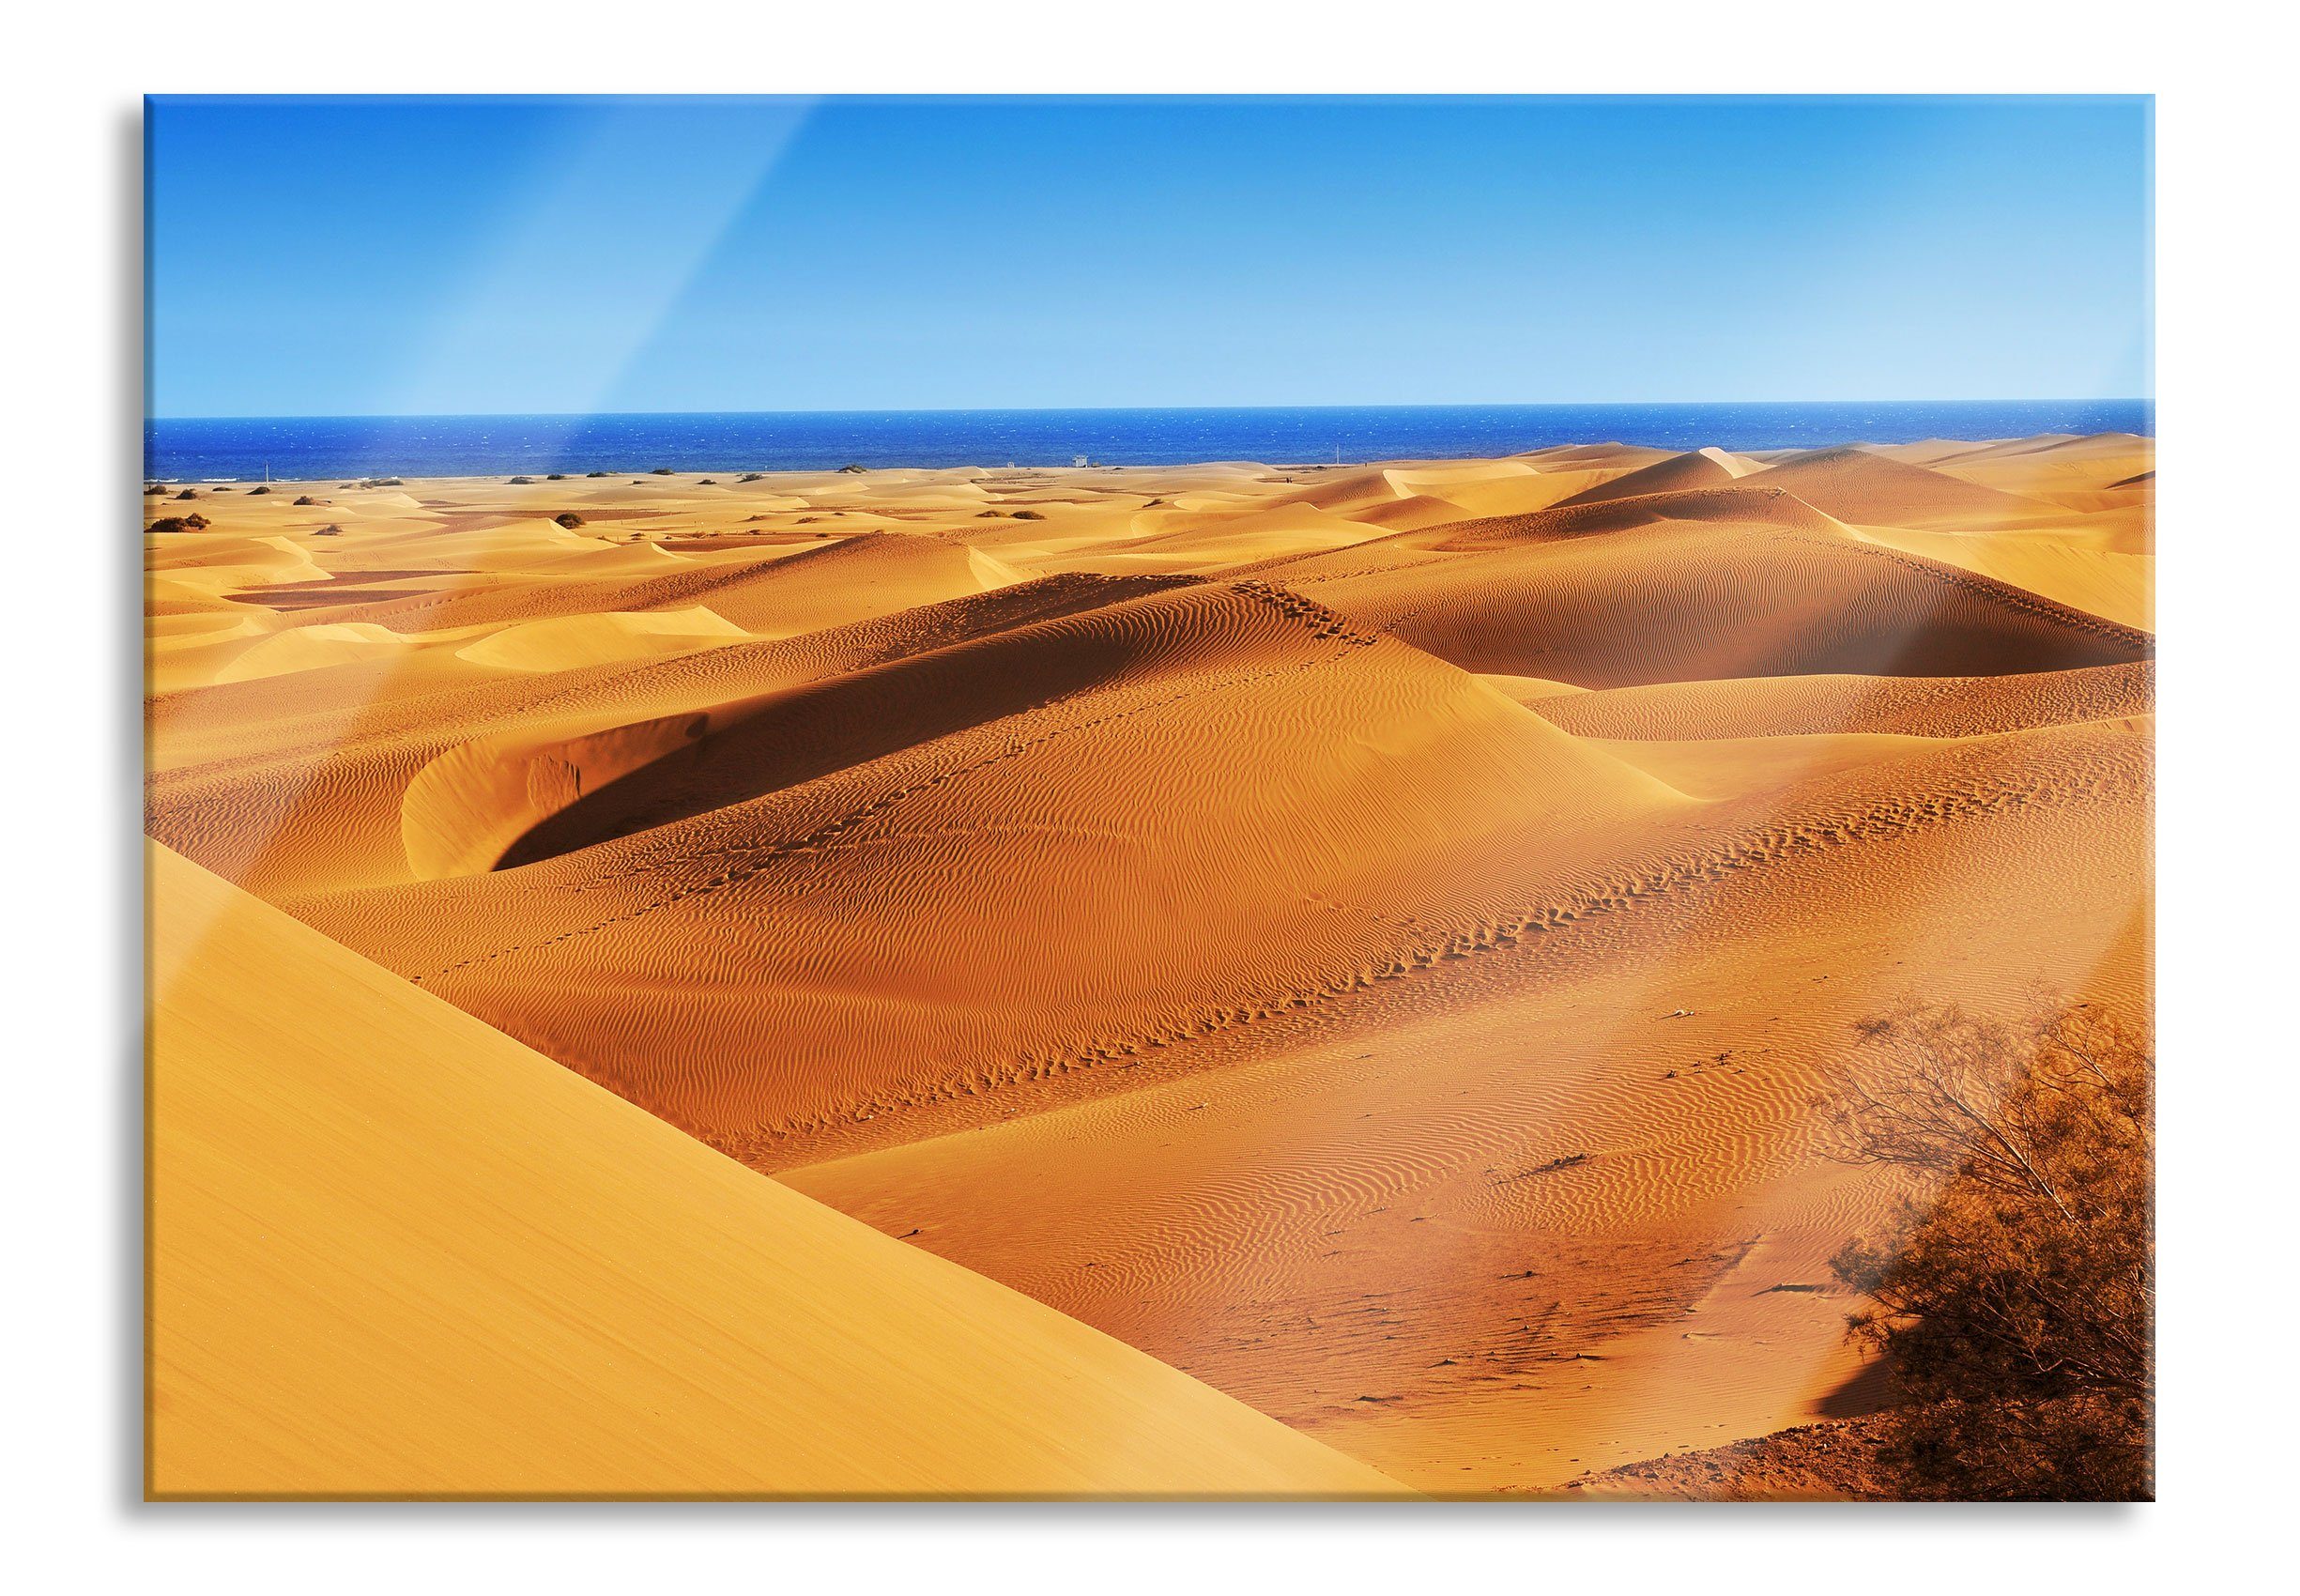 Pixxprint Glasbild Wüste am Meer, Wüste am Meer (1 St), Glasbild aus Echtglas, inkl. Aufhängungen und Abstandshalter